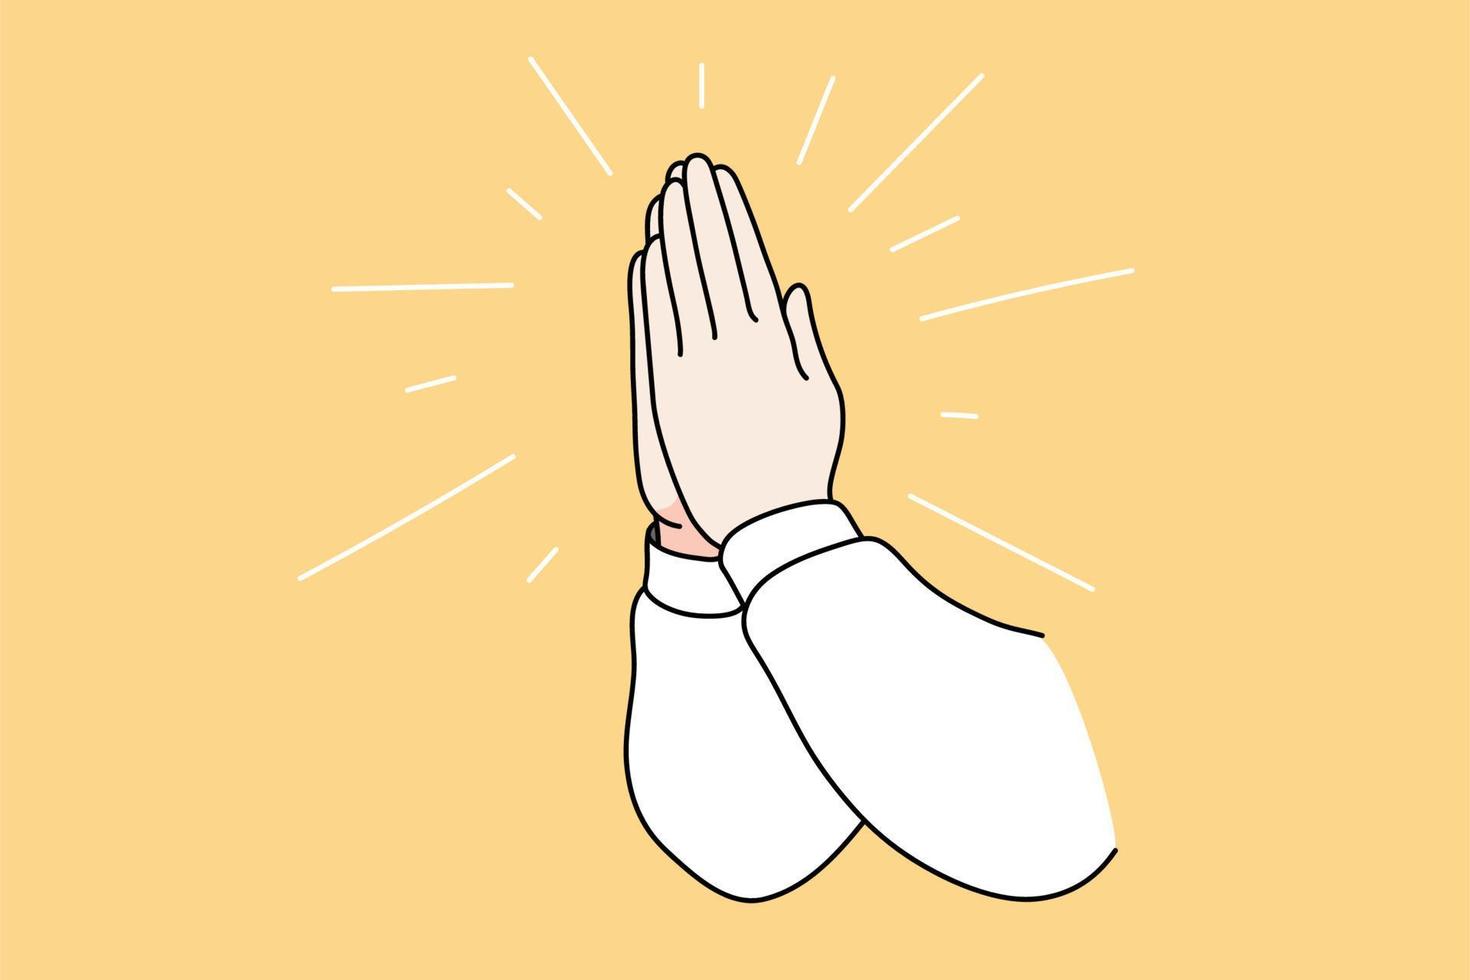 bidden religie en geestelijkheid concept. menselijk handen trekken in religieus gebaar bidden naar god voor beter geestelijk zegen vector illustratie